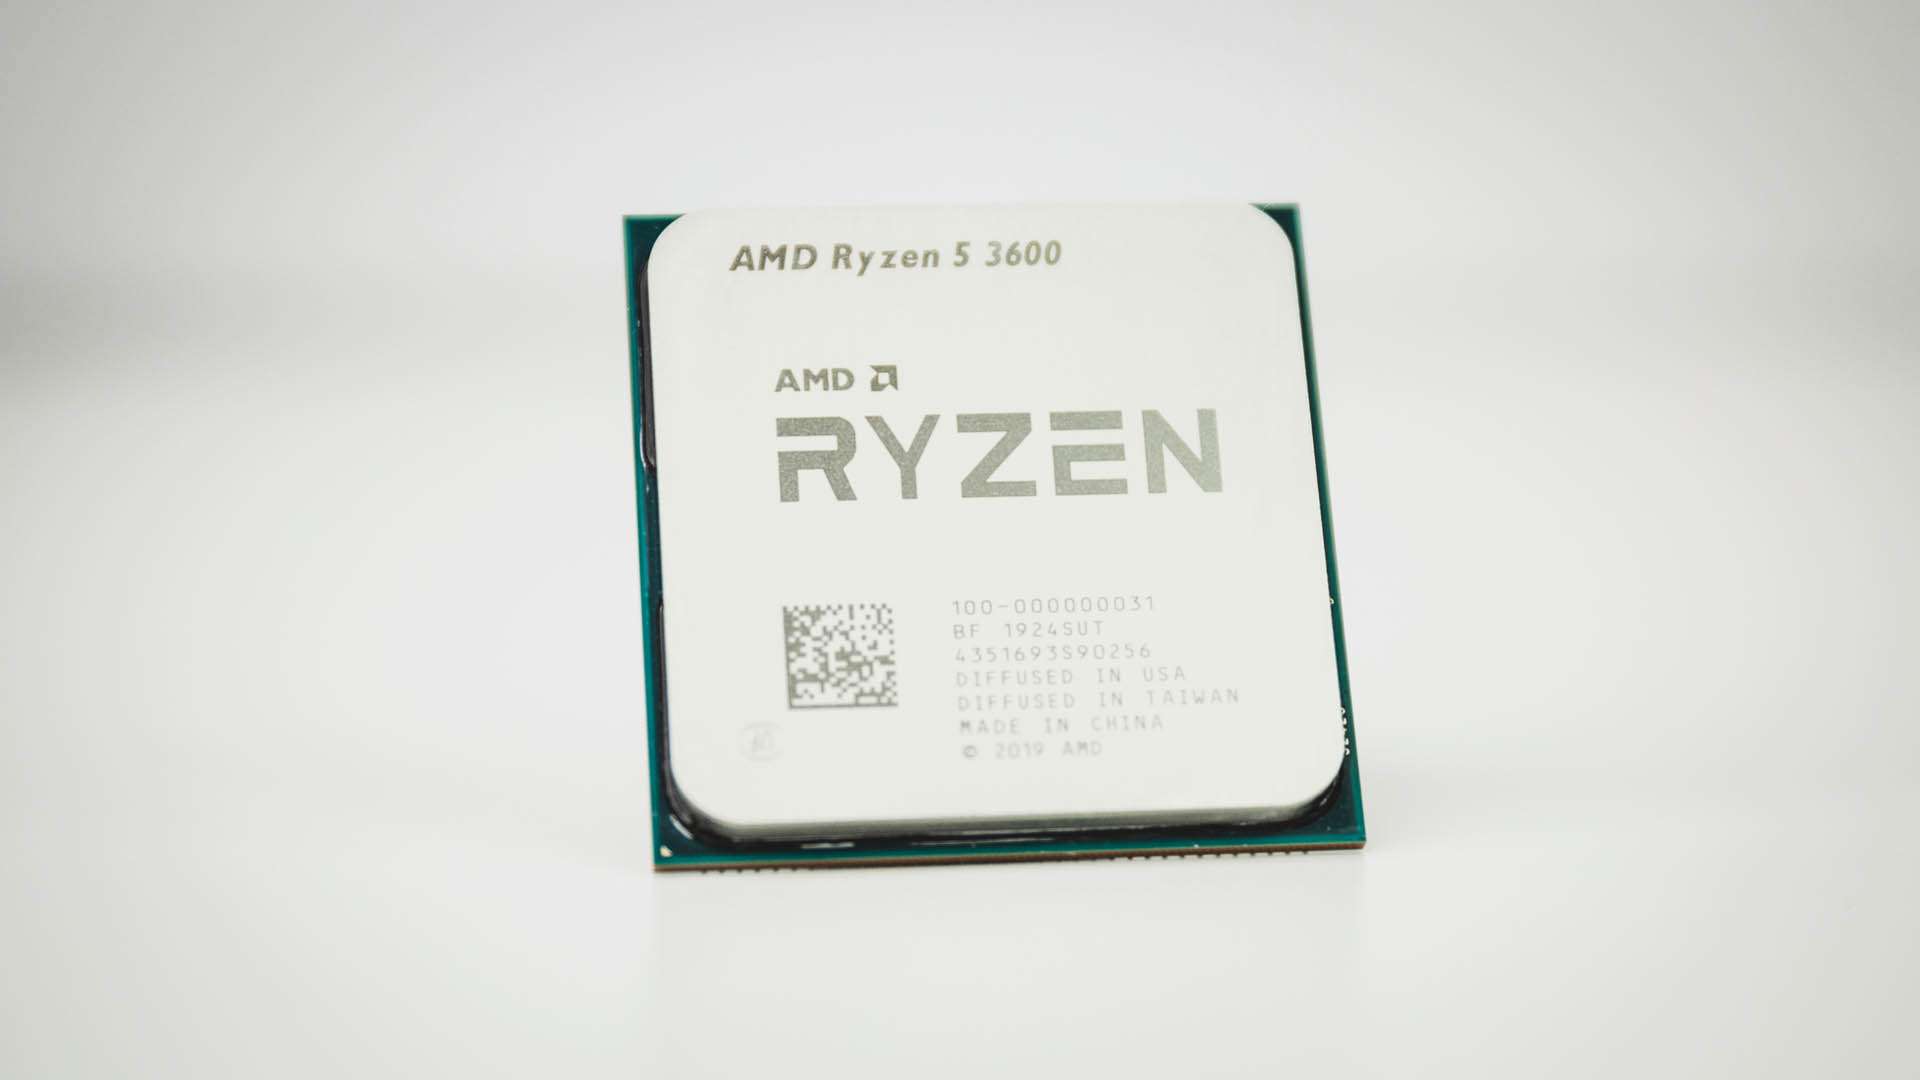 Mew Mew Onhandig Productief AMD Ryzen 5 3600 review: the Ryzen king is dead, long live Ryzen! | PCGamesN